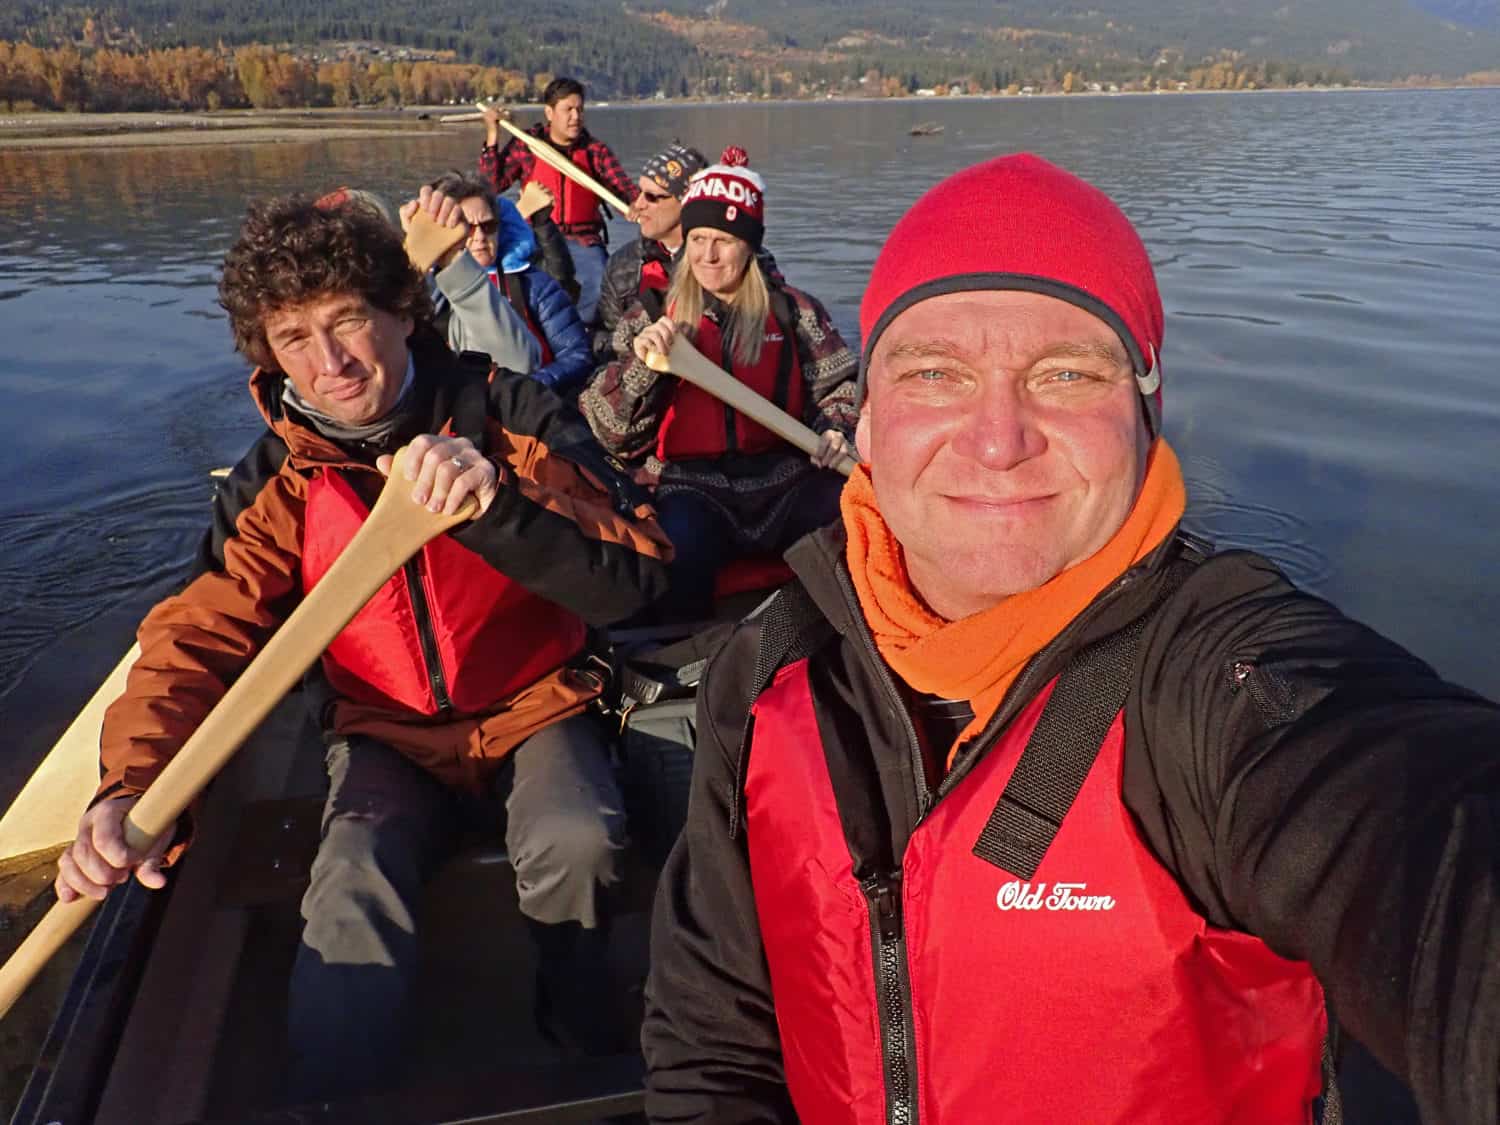 Gruppe in einem Kanu auf dem Weg zum Lachse beobachten in BC, Kanada.